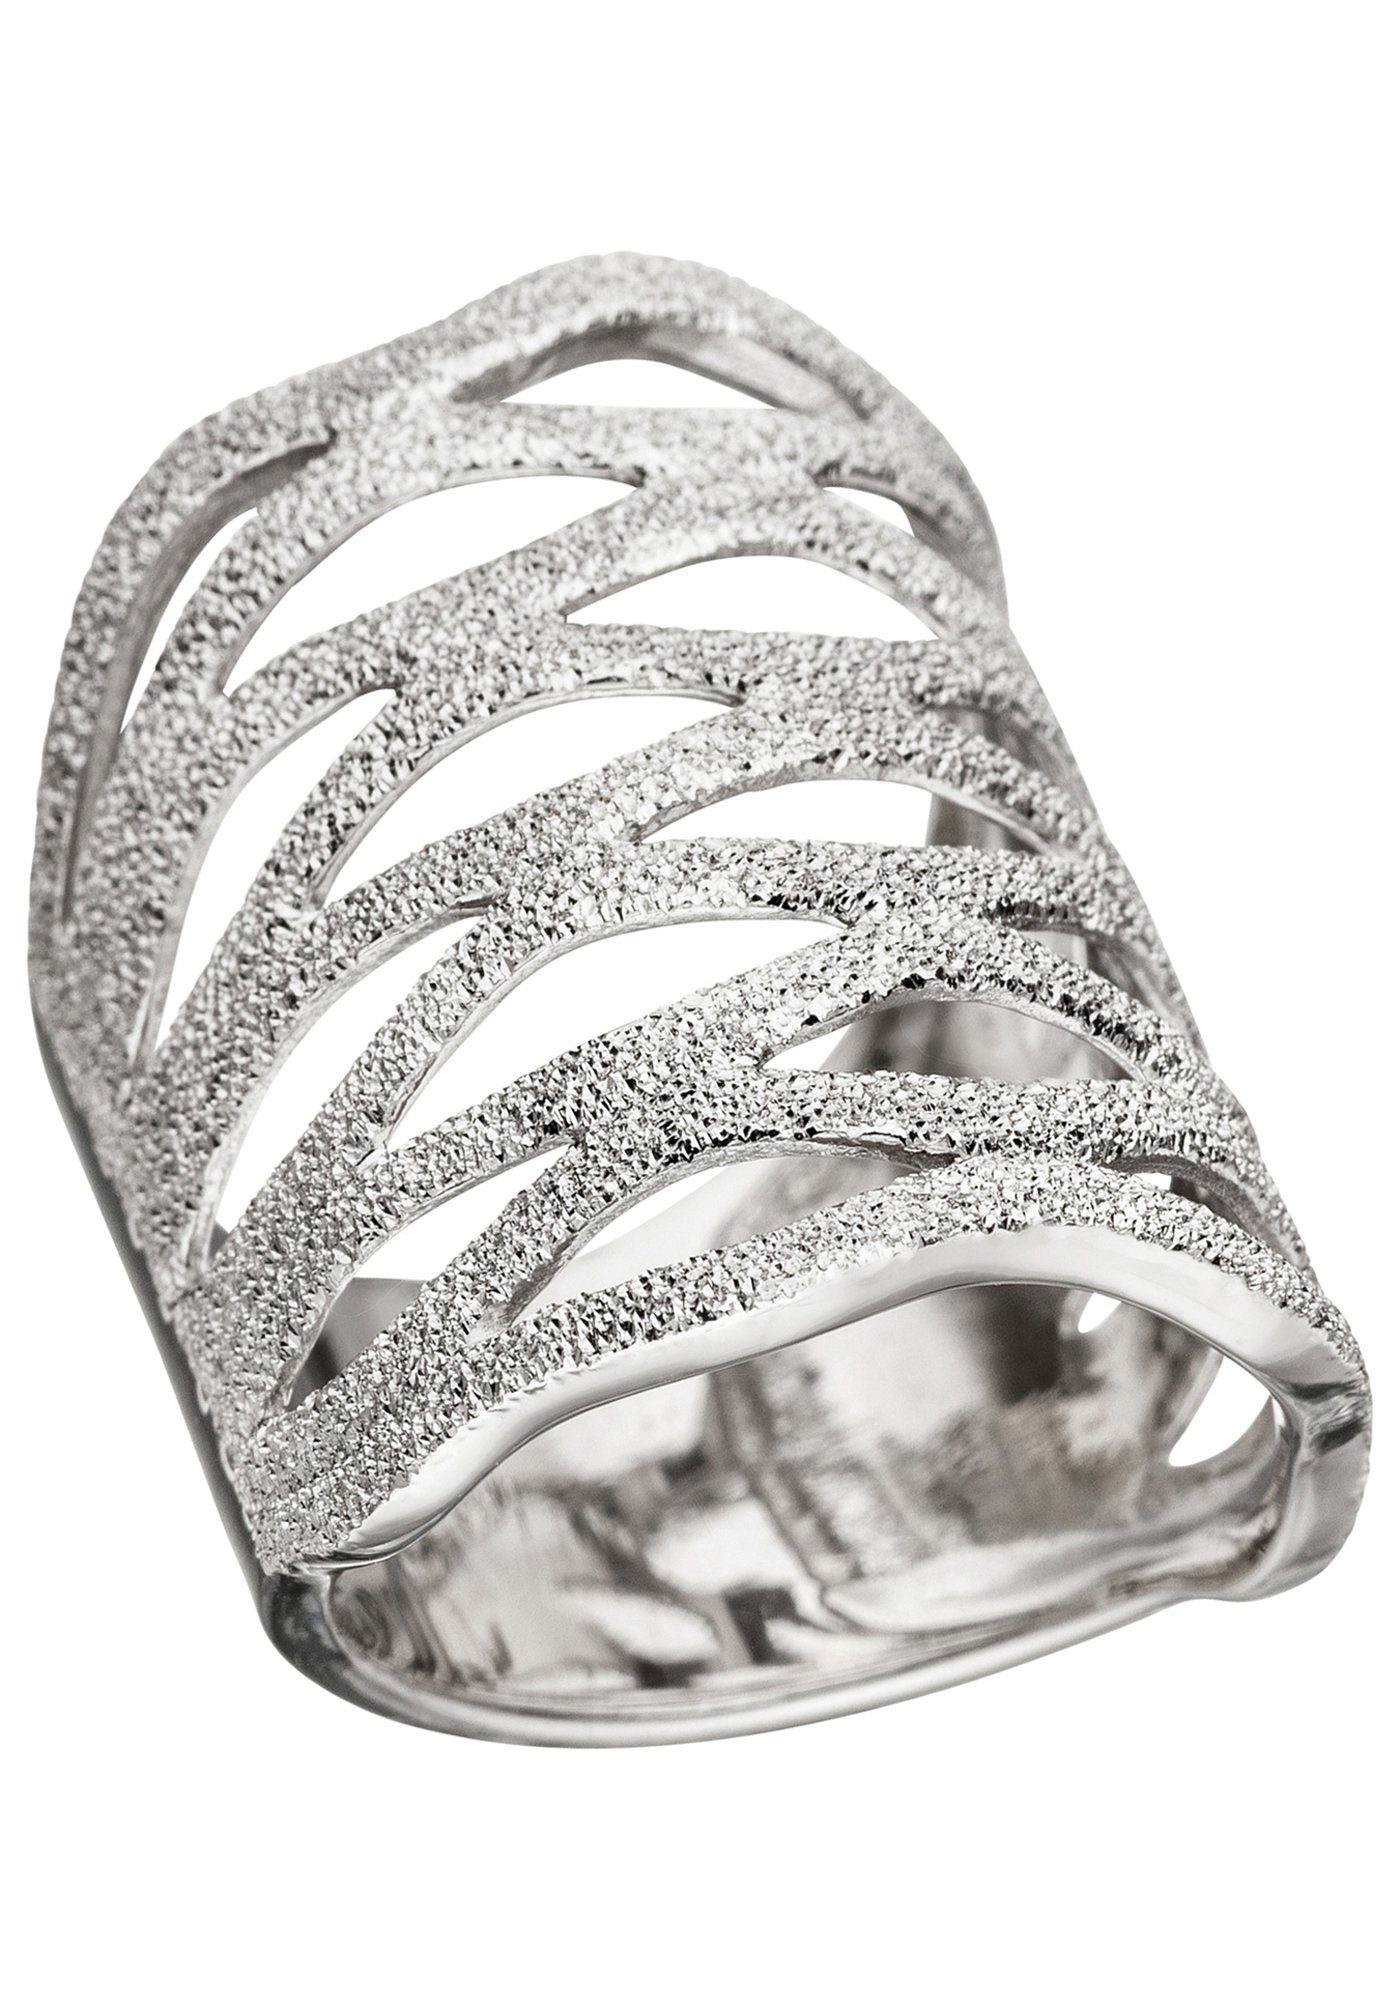 JOBO Silberring, breit 925 auffälliger Silber, Oberflächenstruktur Mit